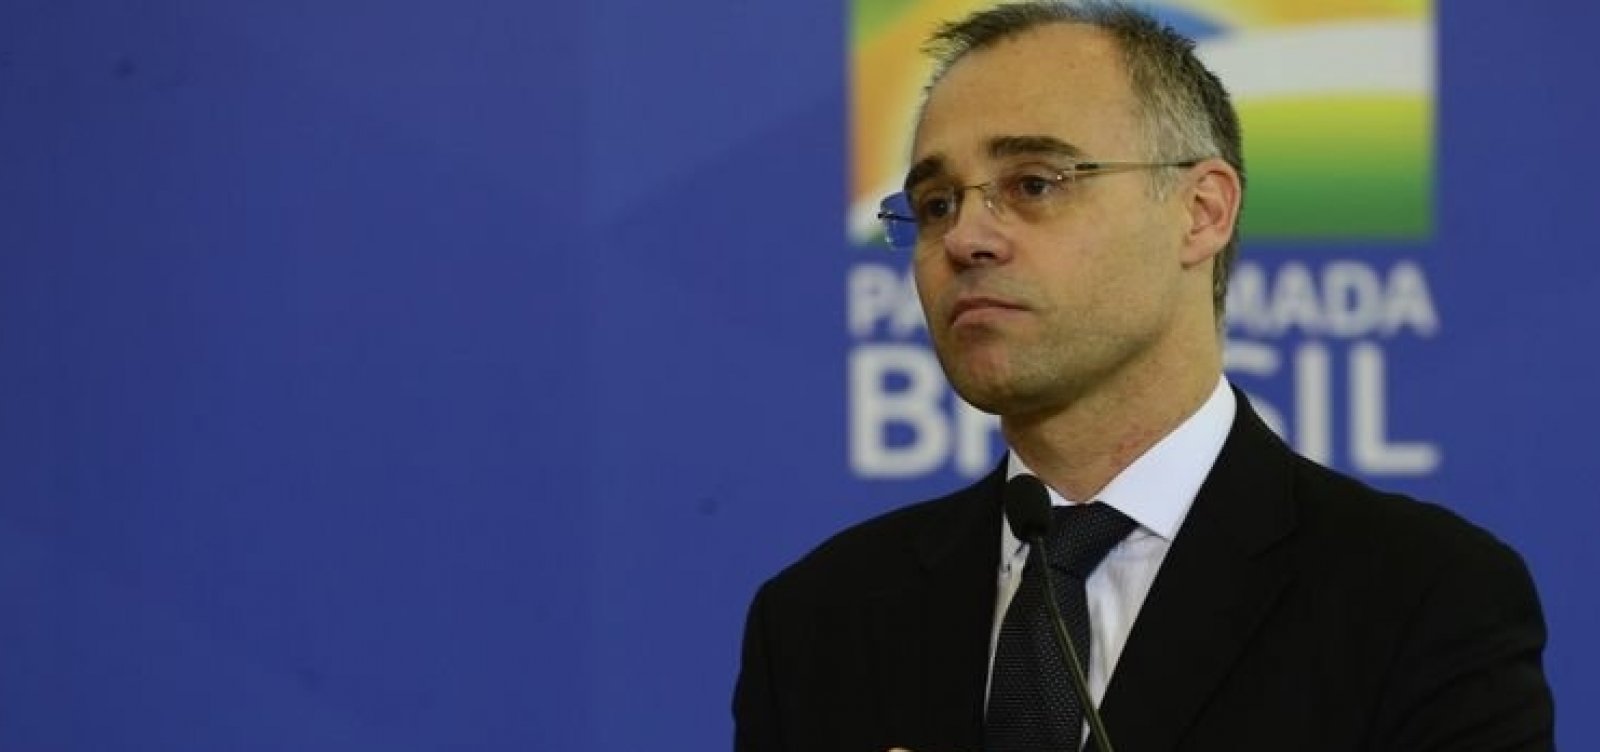 Ministro da Justiça, André Mendonça é diagnosticado com Covid-19